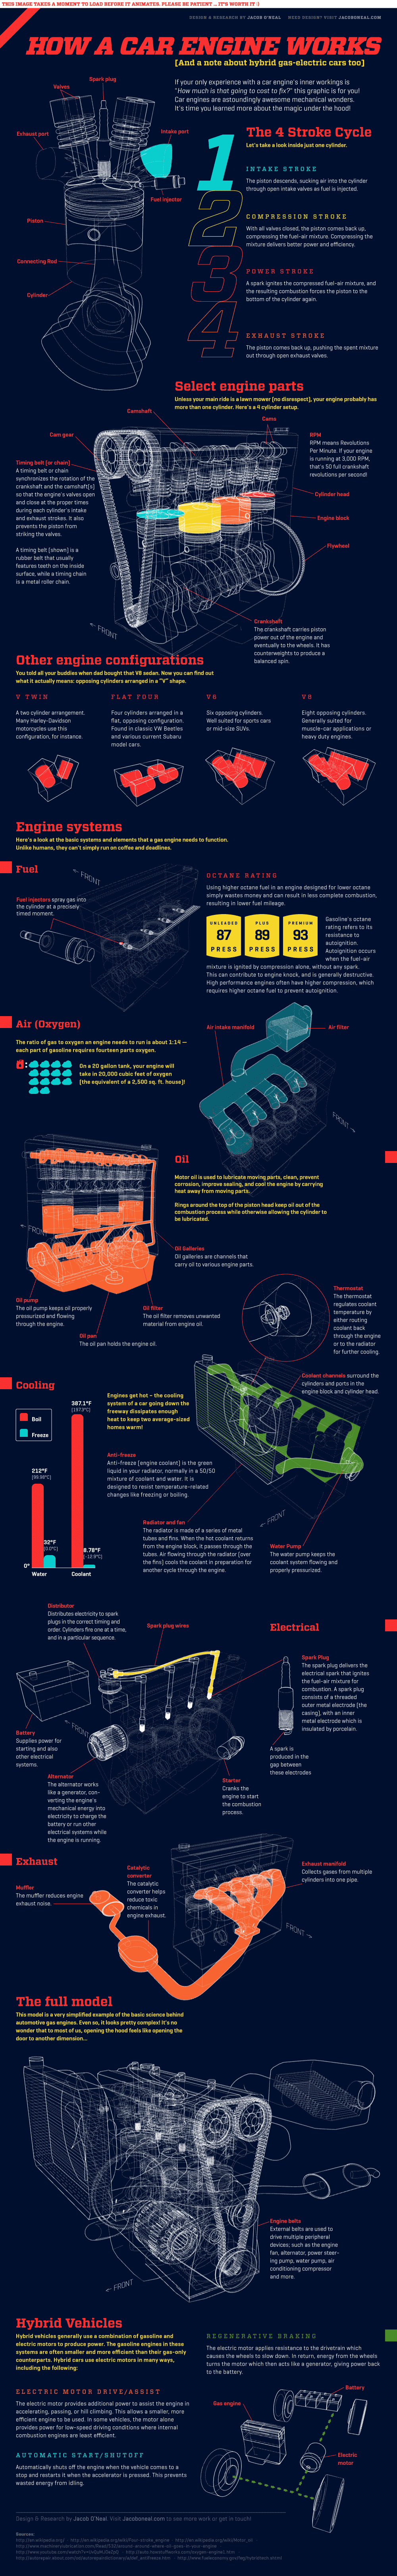 Cómo funciona el motor de un automovil? - #infografia / How a car engine works - #infographic